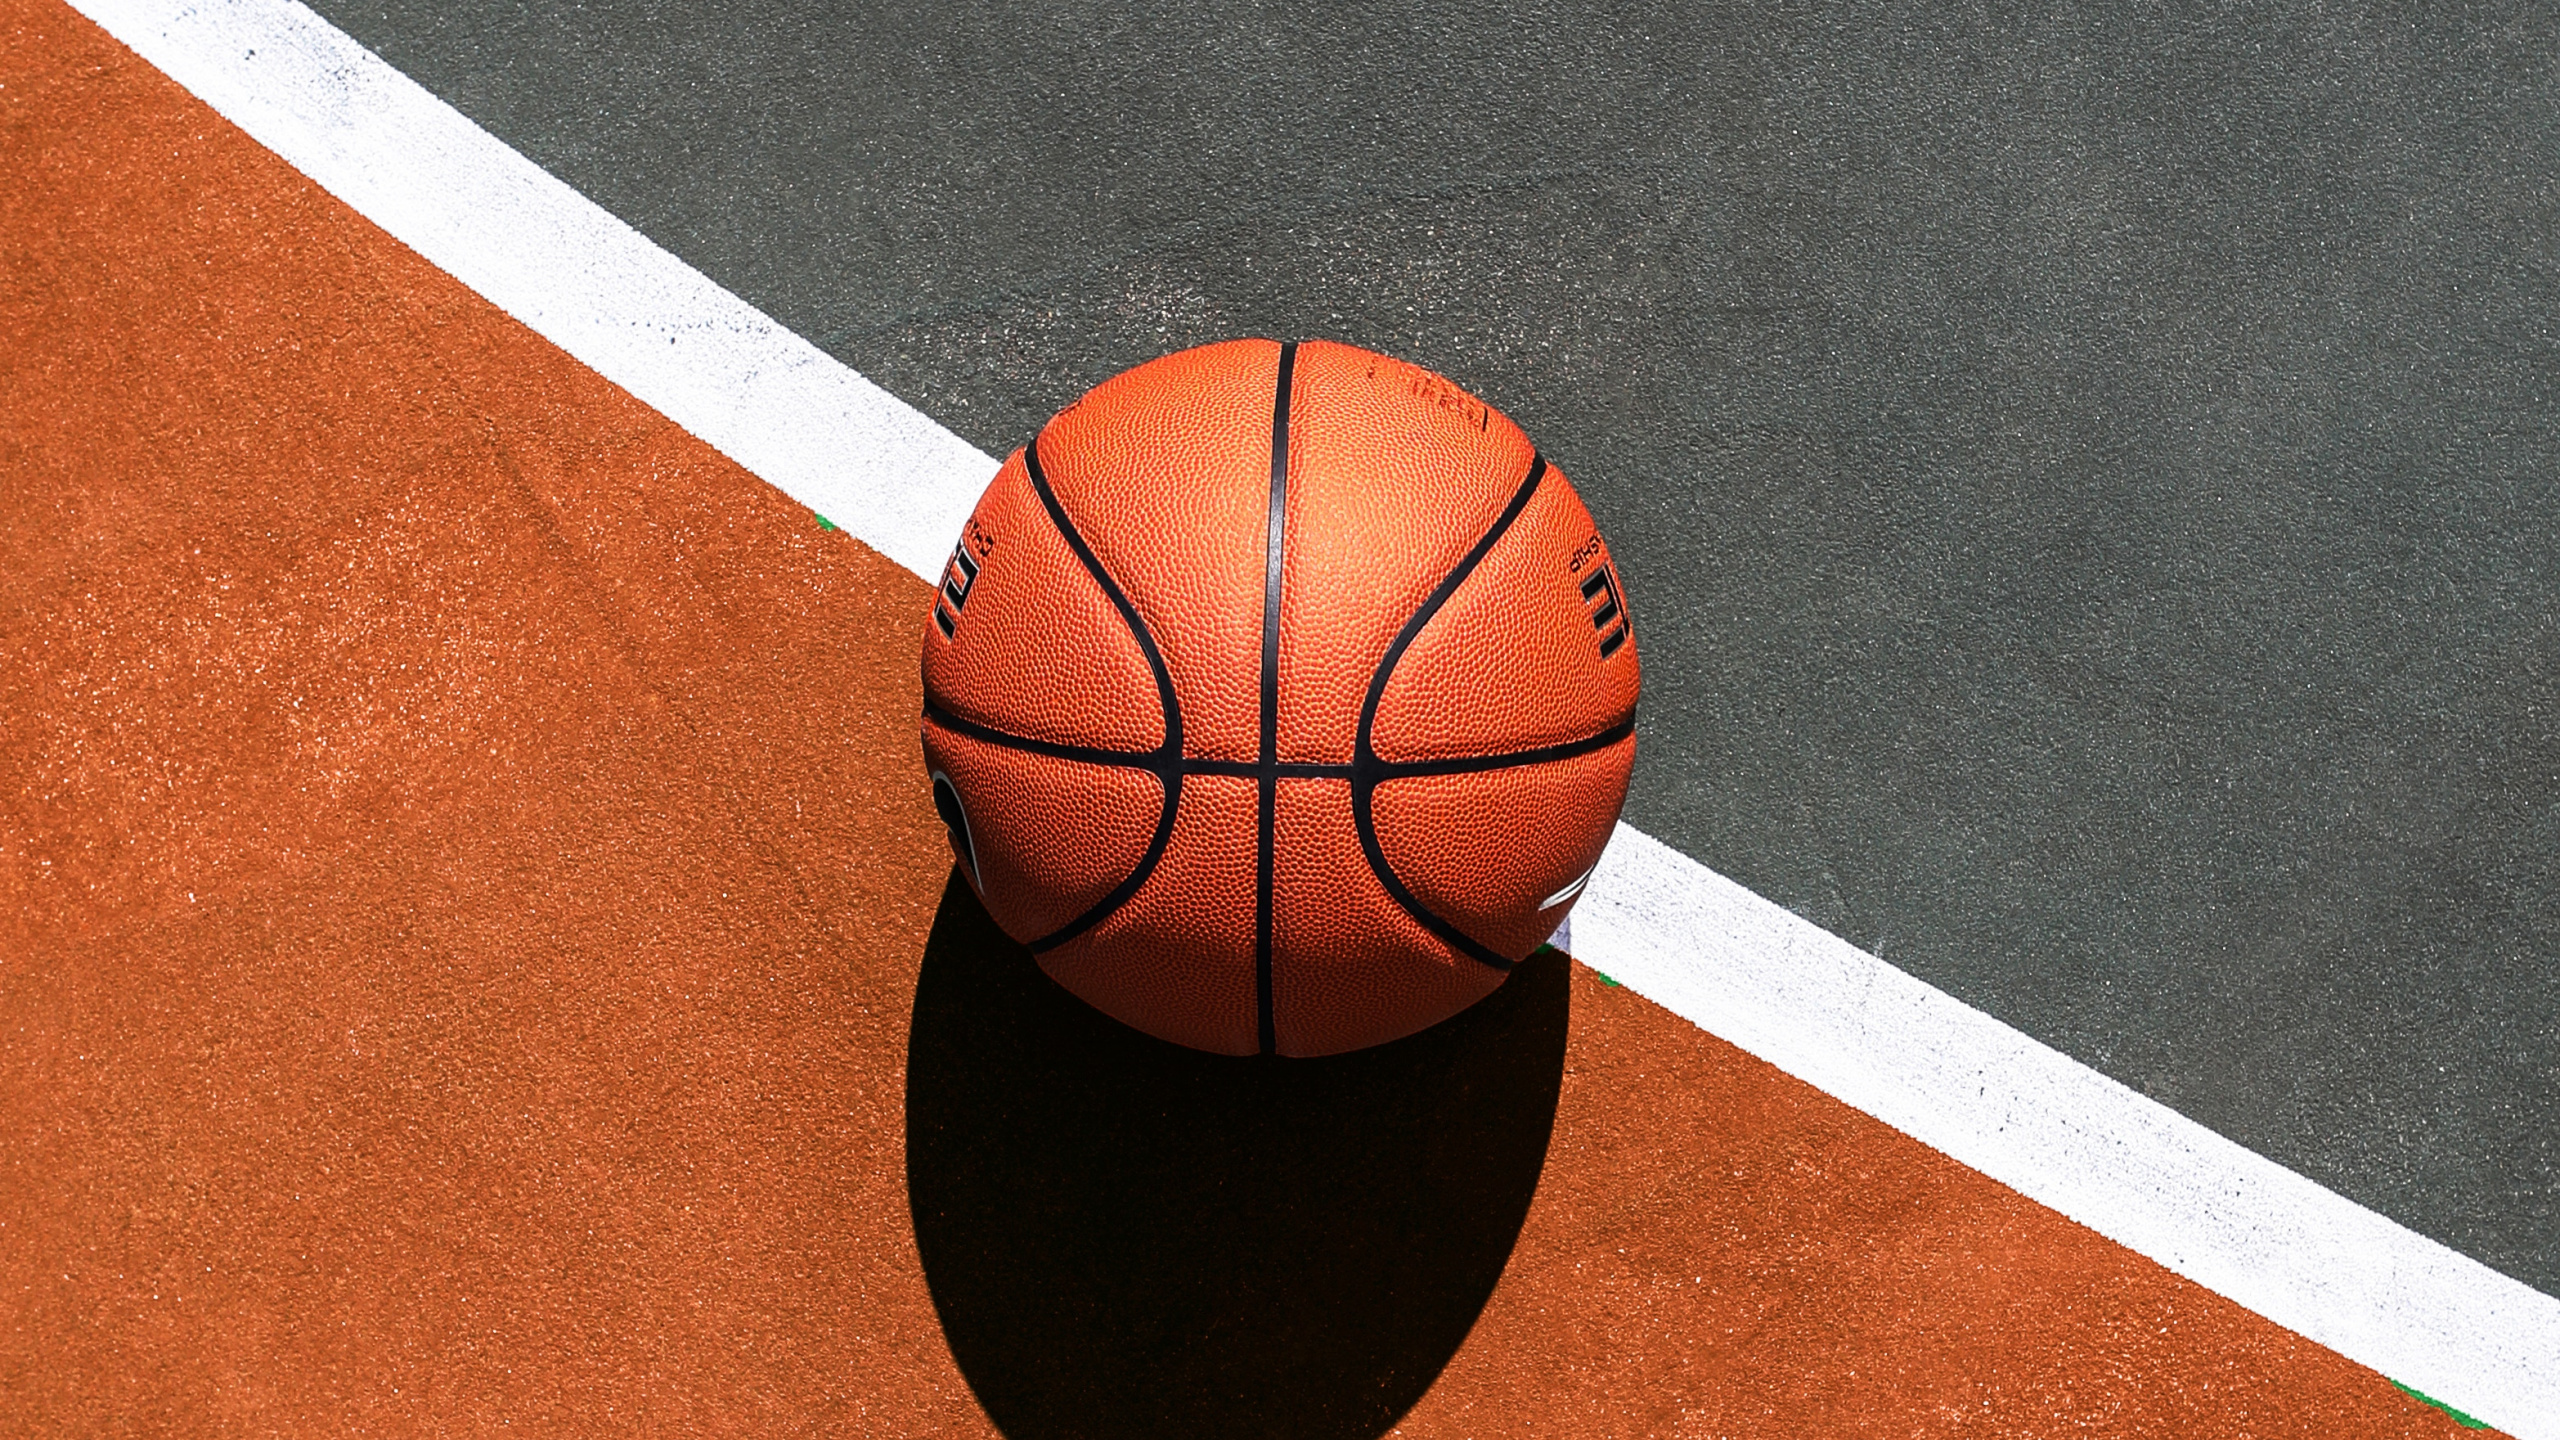 Basketball Auf Blau-weißem Basketballplatz. Wallpaper in 2560x1440 Resolution